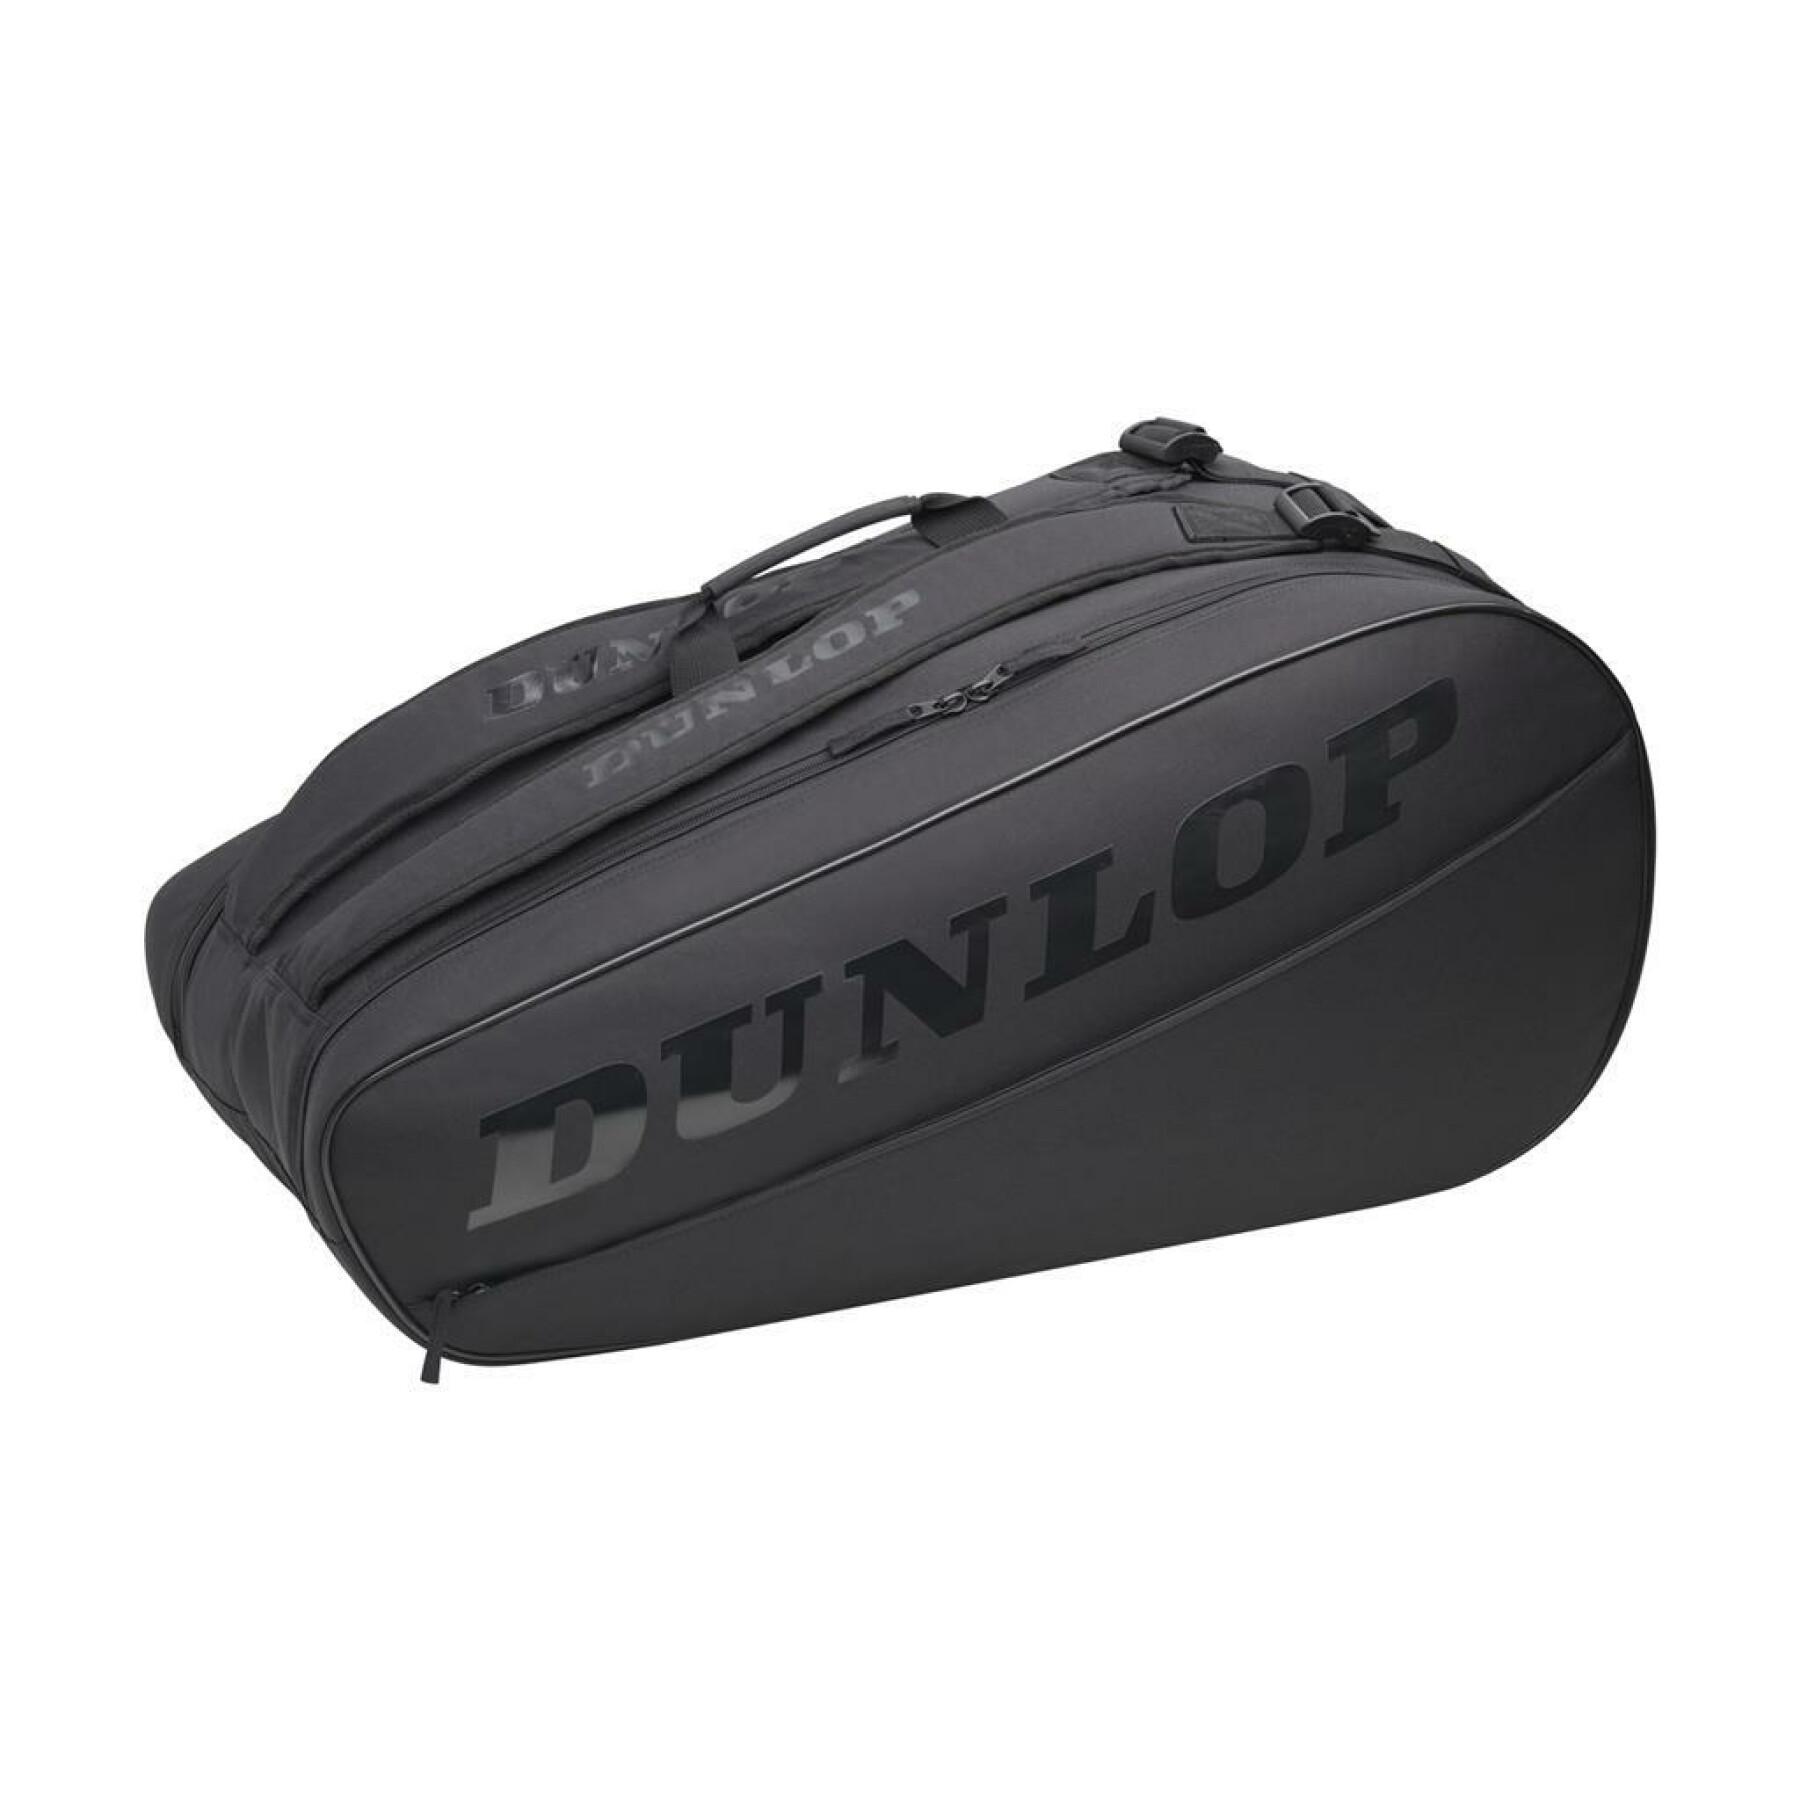 Bolsa de raqueta Dunlop cx-club